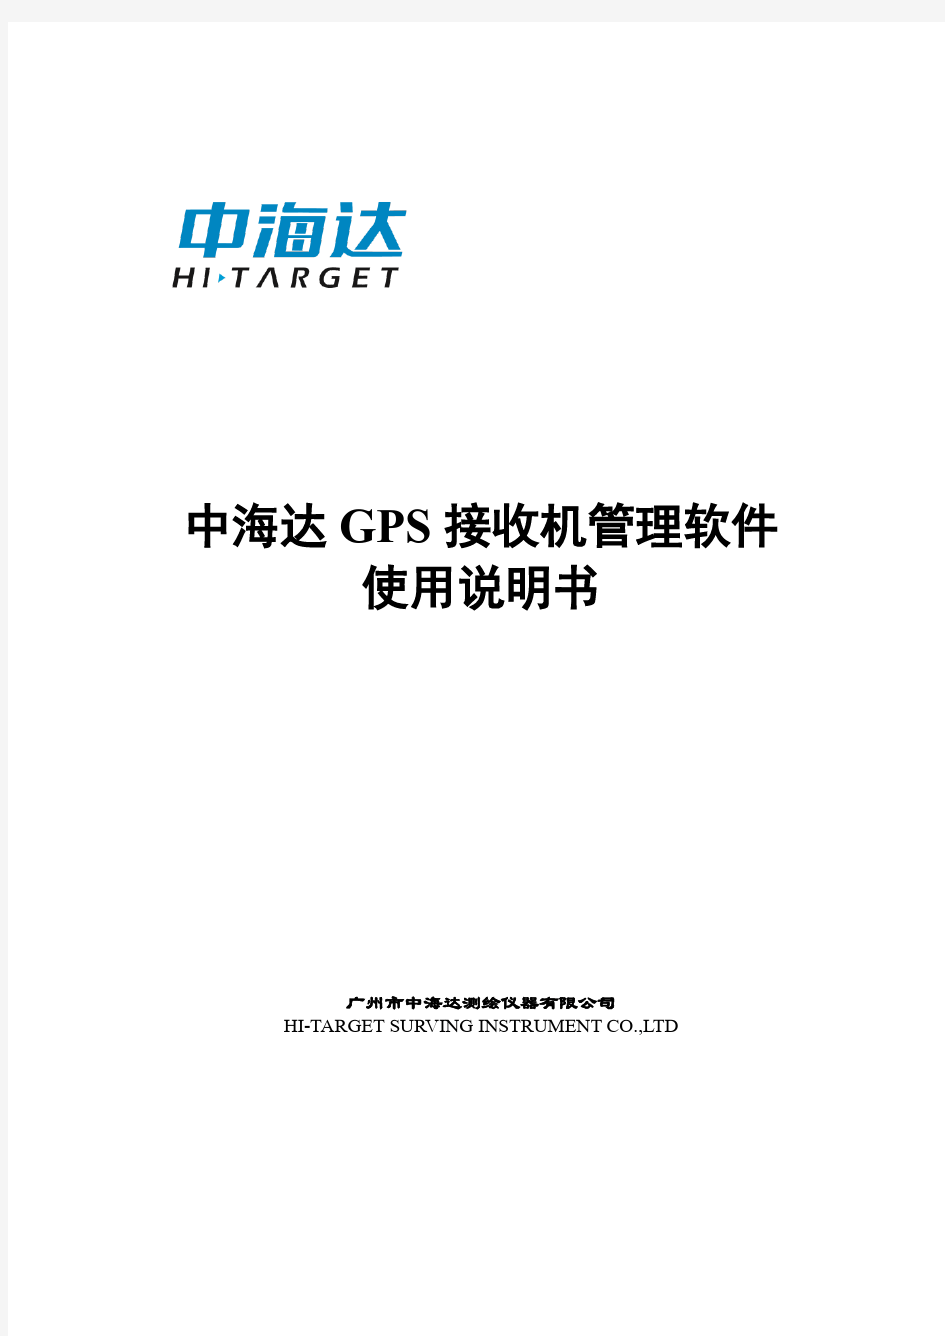 中海达GPS接收机管理软件使用说明书+1.0版(201208)